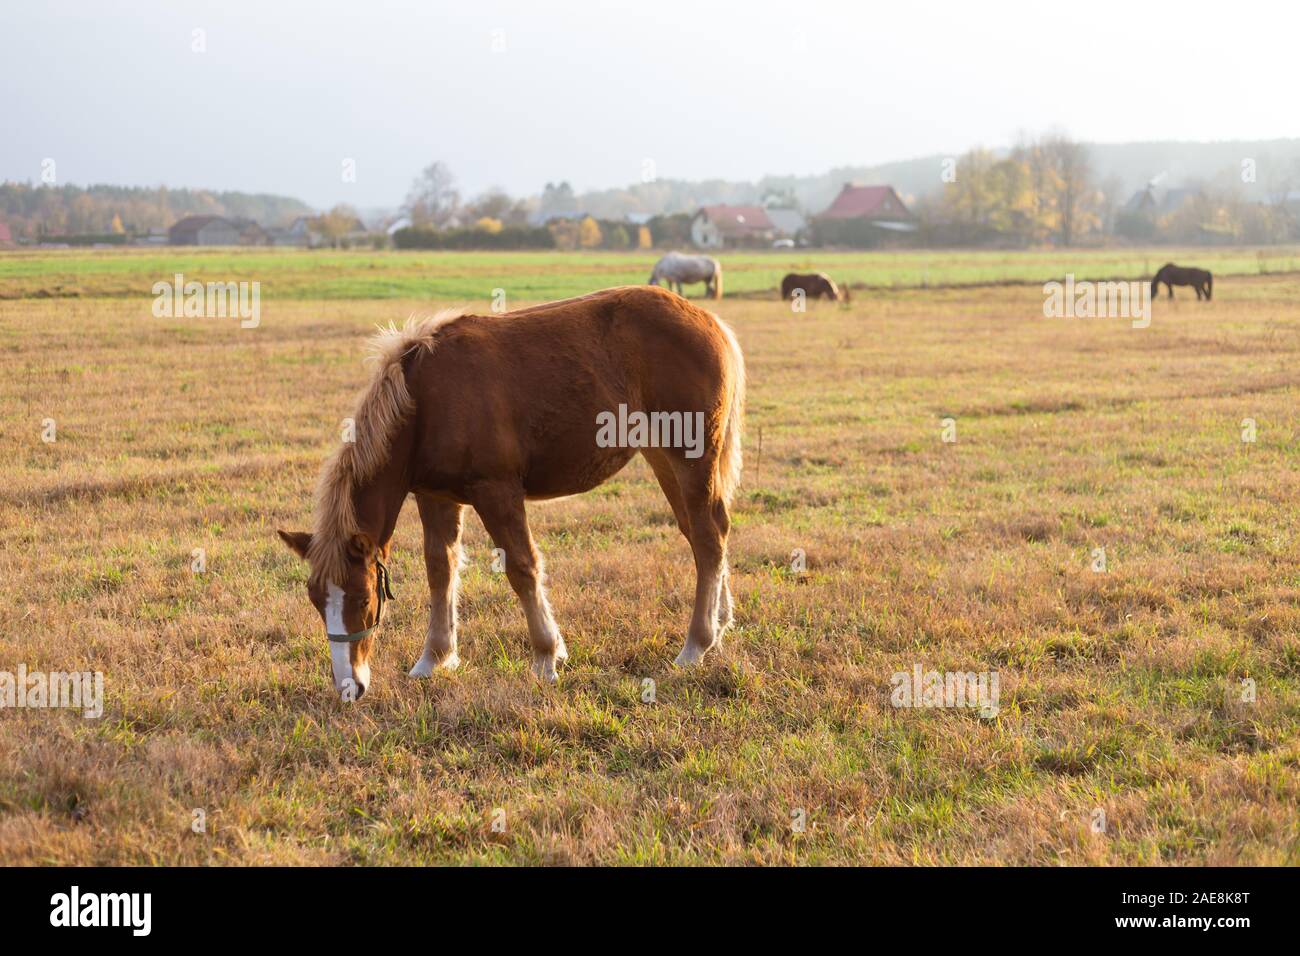 Pferd in das Feld ein. Herbst Landschaft mit der Landschaft in den sonnigen Herbstnachmittag mit Pferden, Weide und Häuser Stockfoto